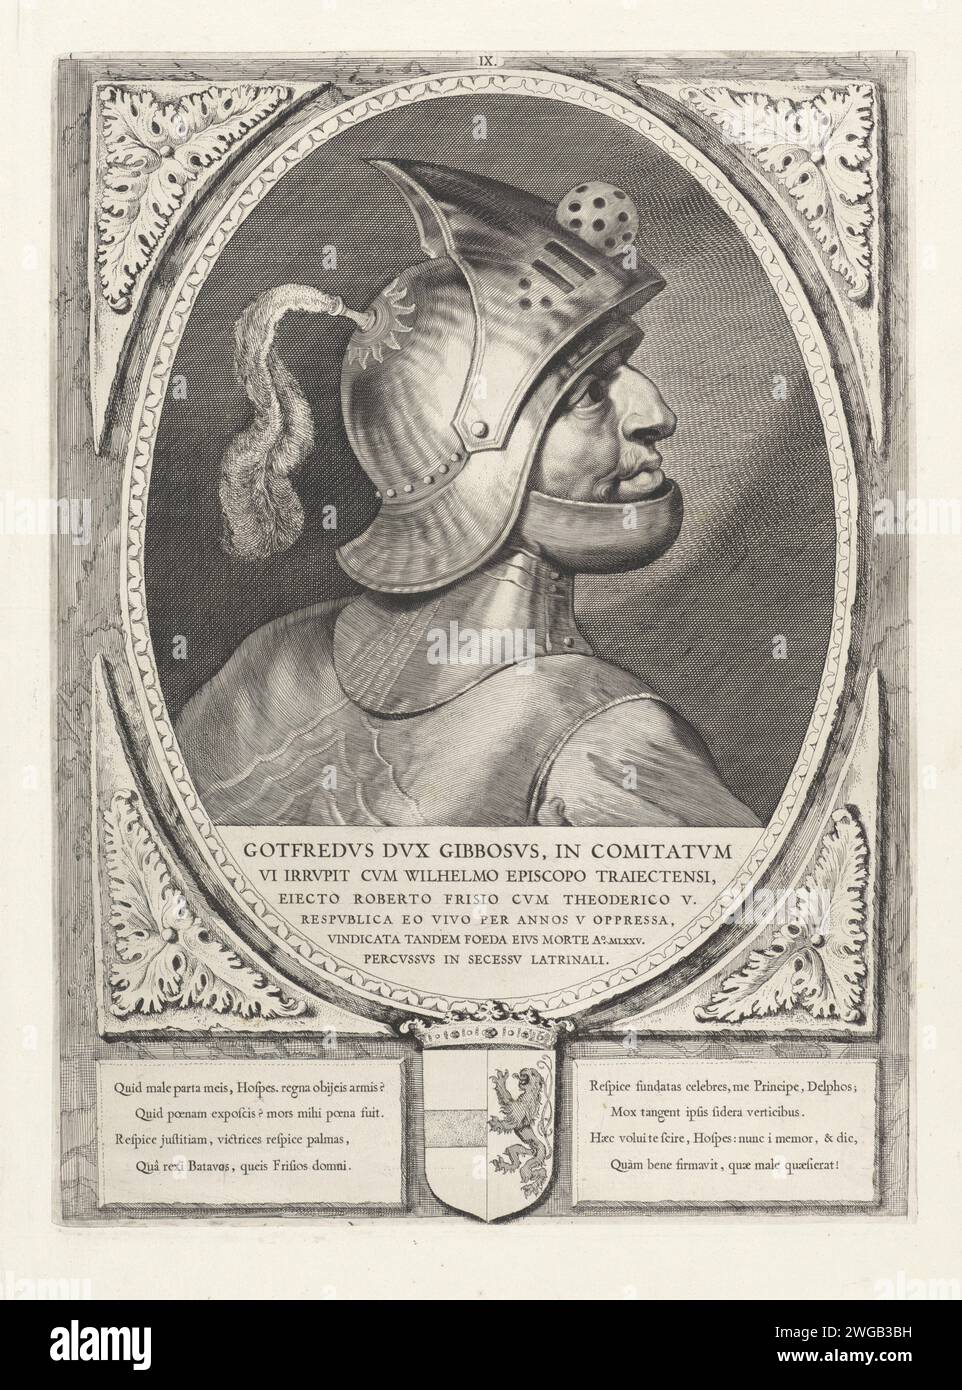 Porträt von Godfried III. Mit de Bult, Cornelis Visscher (II), 1650 Druck Godfried III. Mit der Beule, Herzog von Unterlothringen. Er trägt einen Helm und ist im Profil dargestellt. Der Rahmen ist mit dem Wapen van Holland verziert. Haarlem Papier Gravur / Ätzhelm Stockfoto